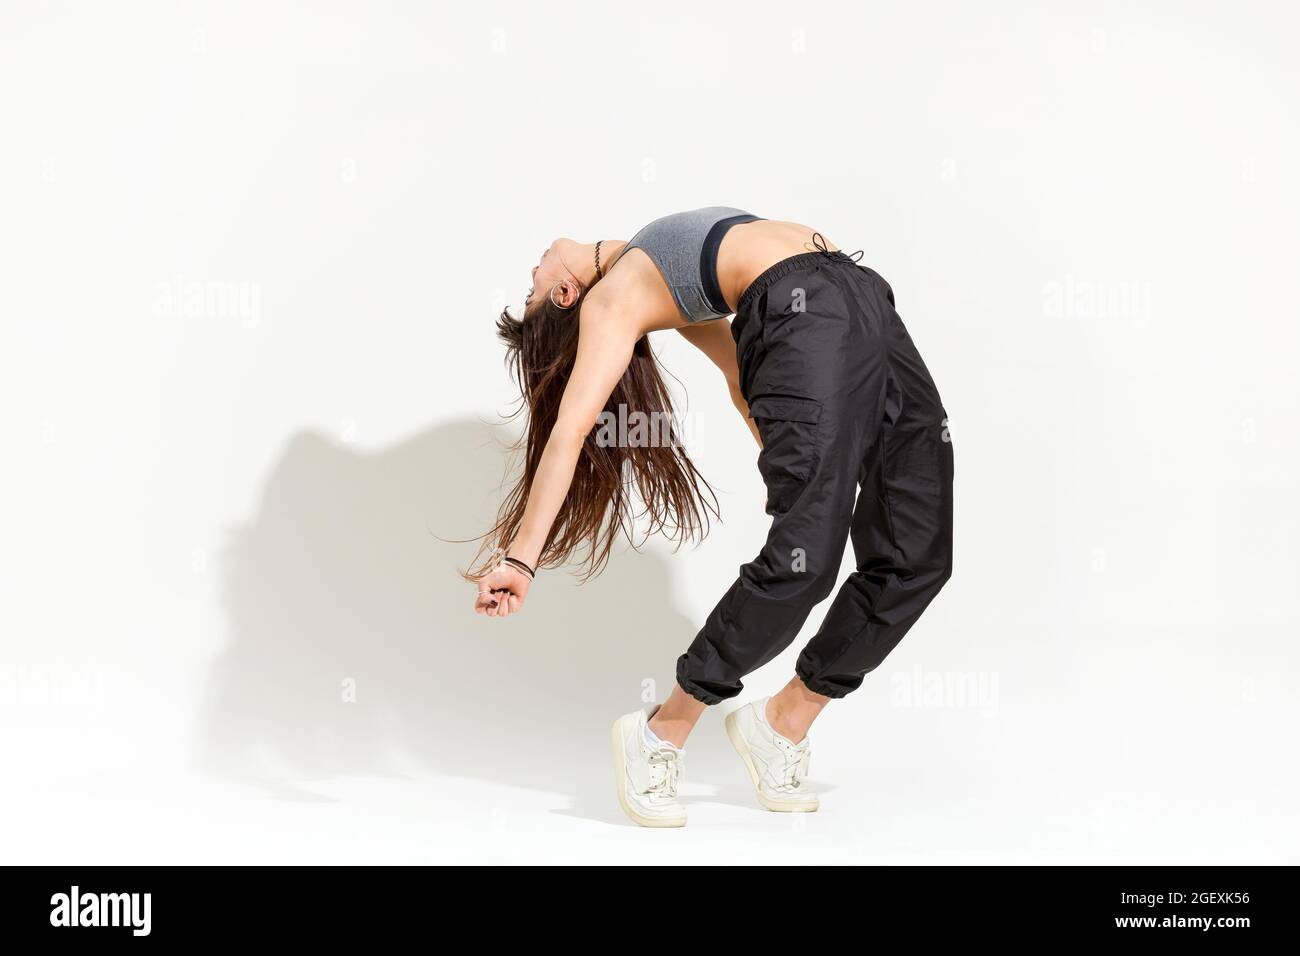 Agile, geschmeidige junge Frau, die eine moderne Hip-Hop-Tanzpose macht, die auf ihren Zehen balanciert und sich nach hinten wölbt und einen Schatten auf einen weißen Hintergrund wirft Stockfoto